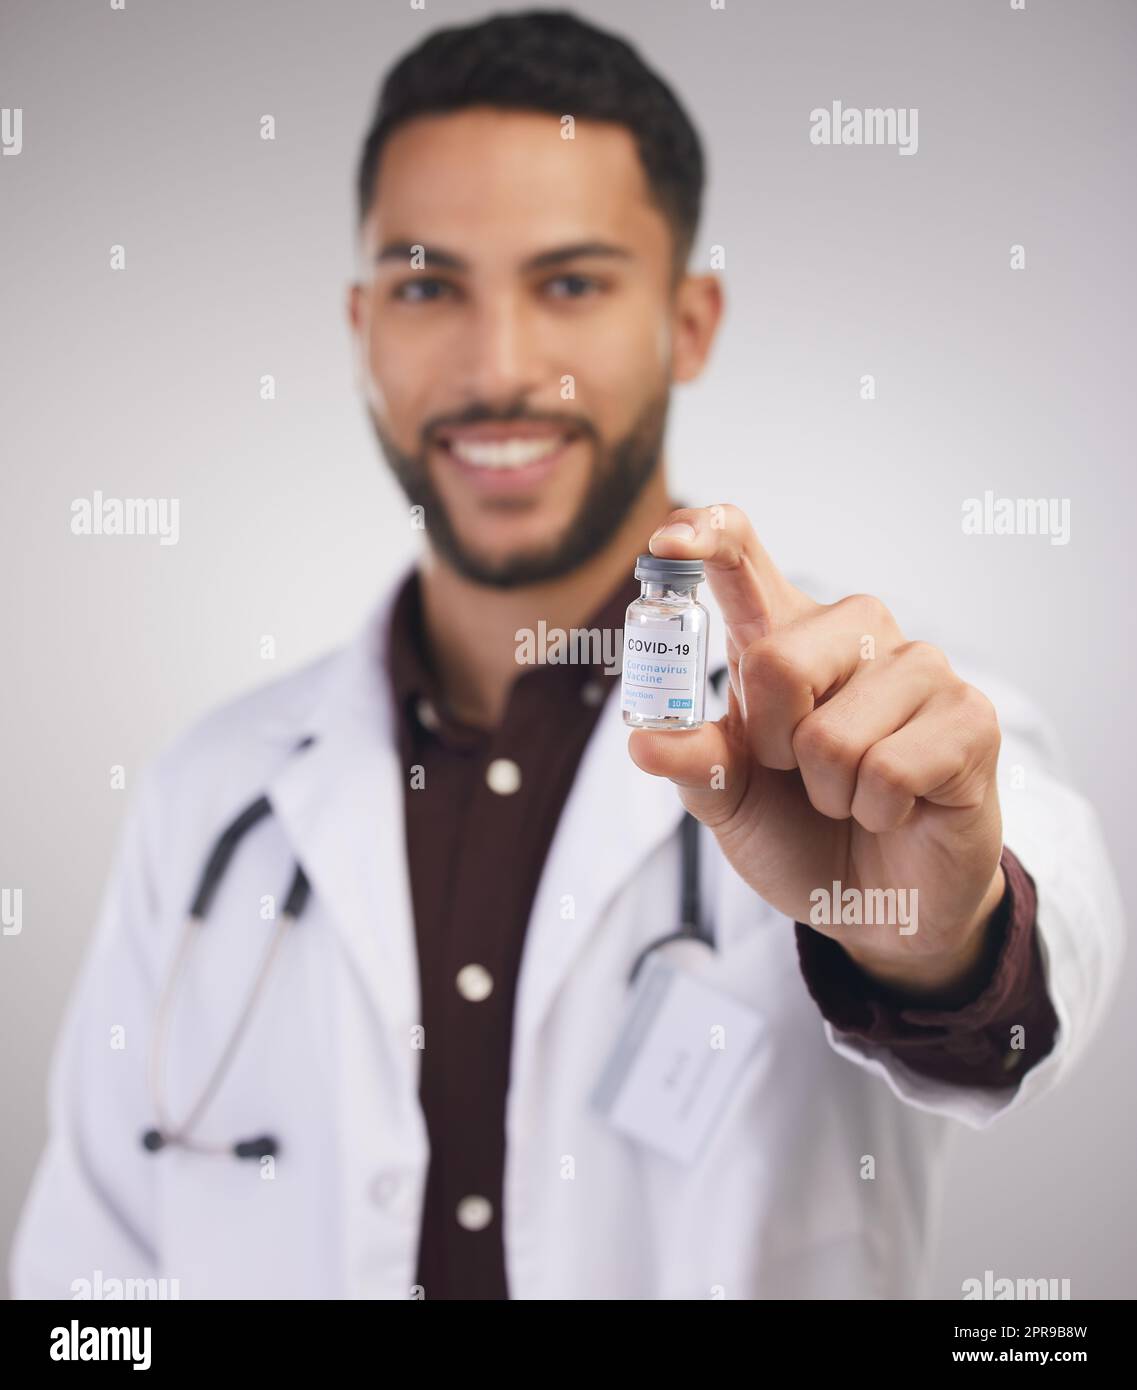 Ein Lebensretter in einer Flasche. Ein hübscher junger Arzt, der allein im Studio steht und eine Ampulle des Covid-Impfstoffs hält. Stockfoto